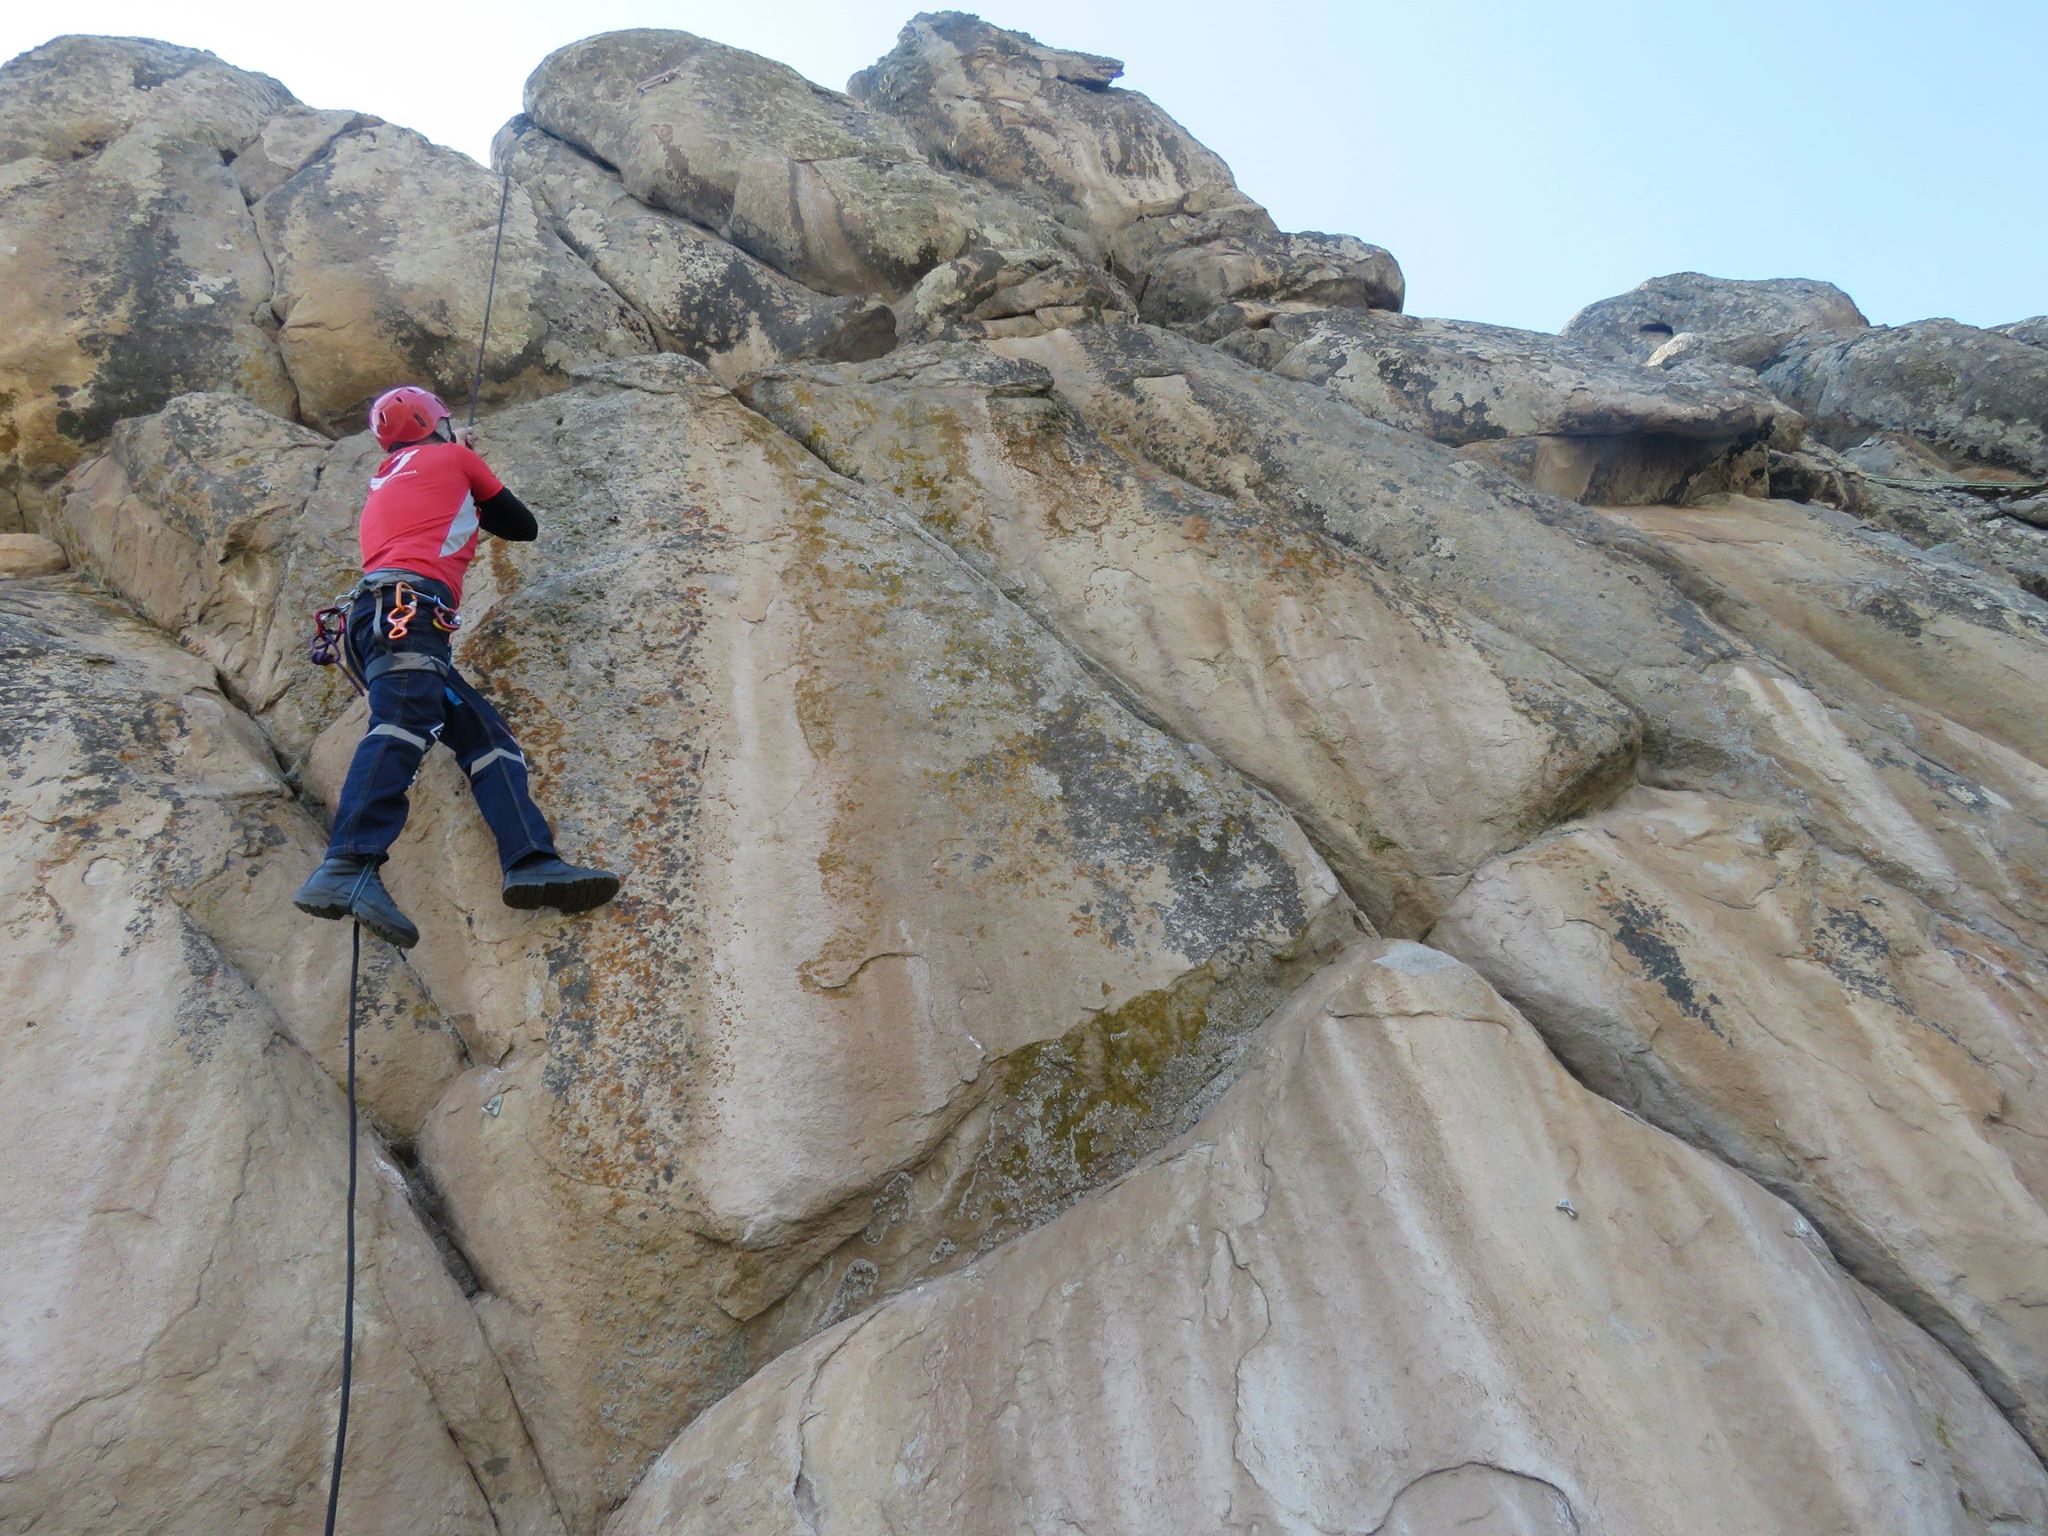 TDF Öncesi Kaya Tırmanışı Eğitimi